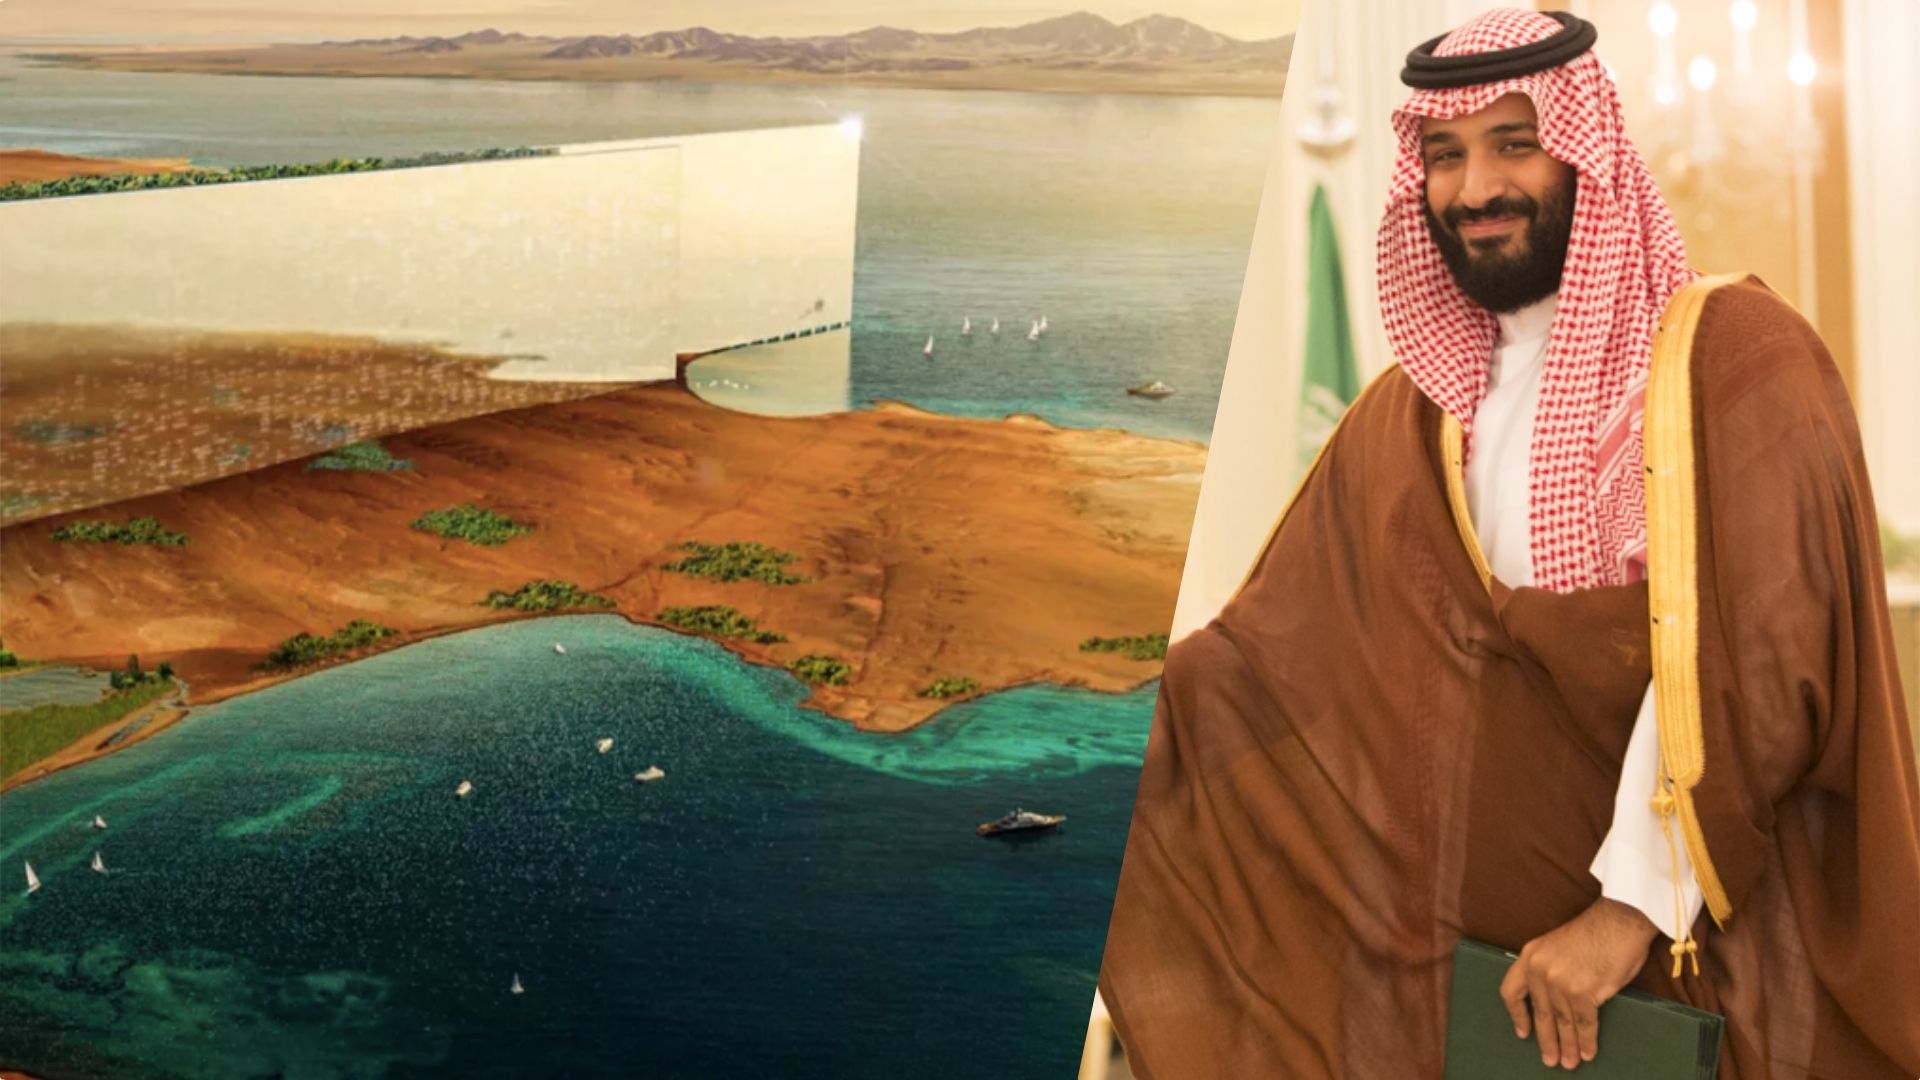 Nie jest łatwo postawić megamiasto na środku pustyni. „Saudyjska wizja” rozpada się na naszych oczach